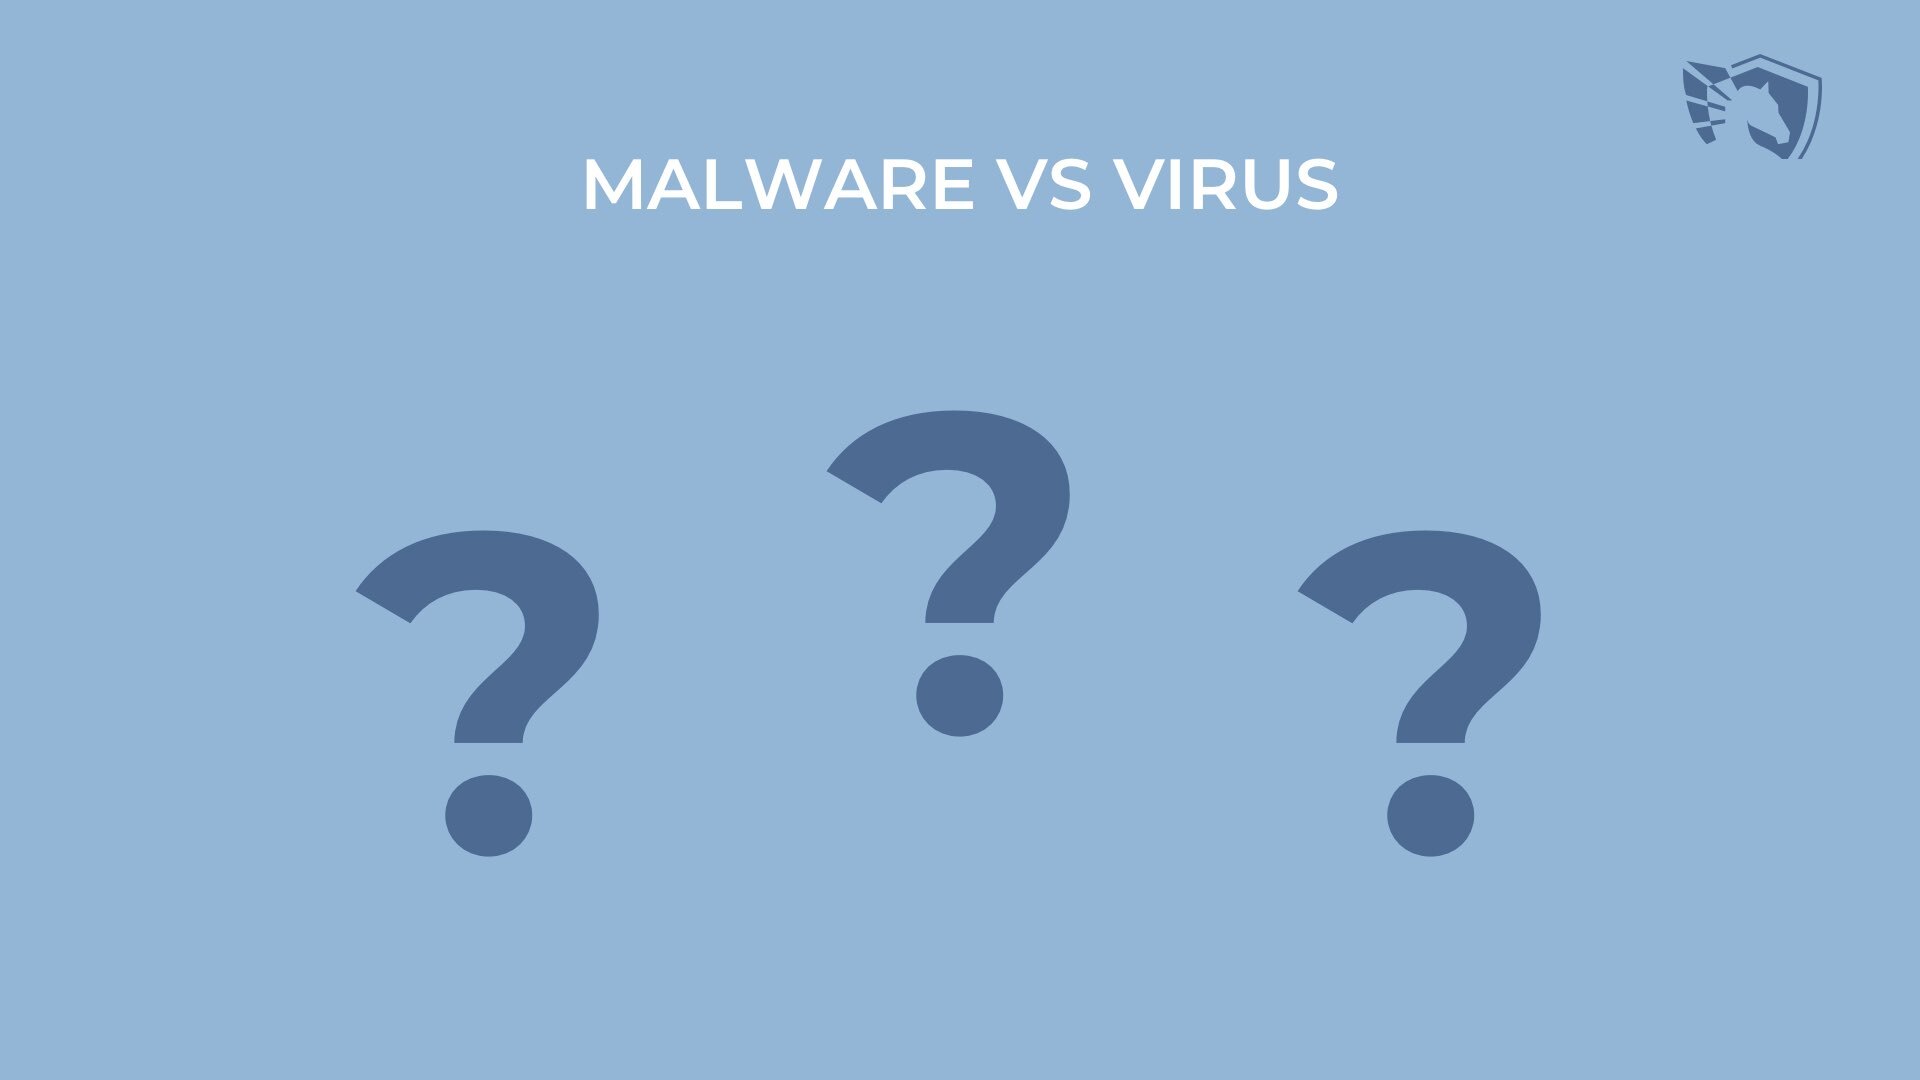 맬웨어 대 바이러스 - 차이점은 무엇입니까?